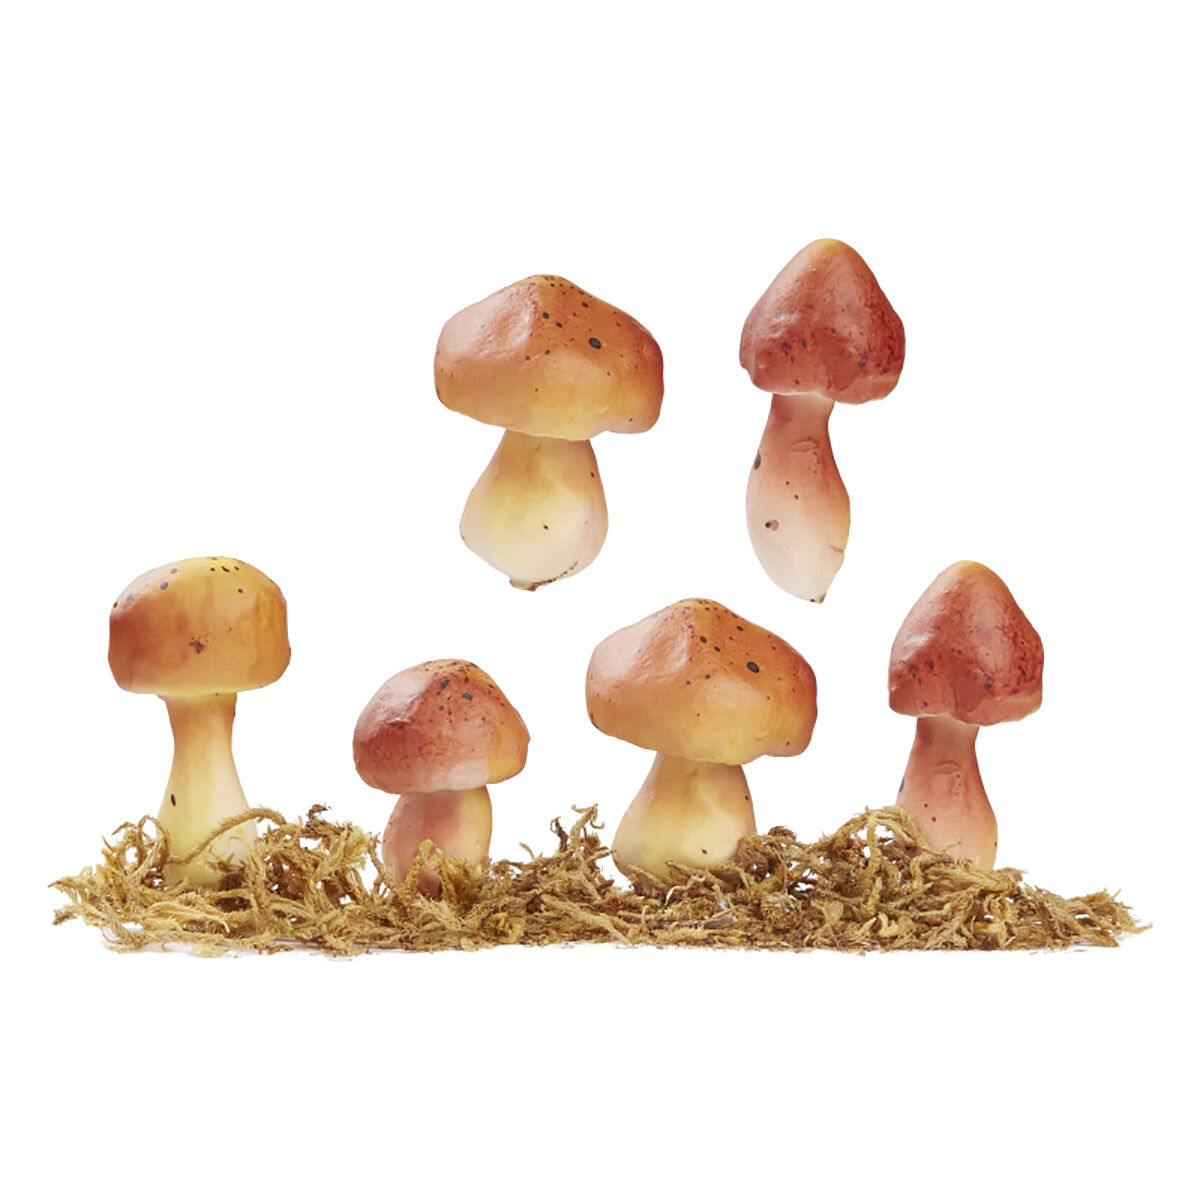 NEU Miniatur-Pilze mit Moos, Gre ca. 4 - 4,5 cm, Beutel mit 4 Stck, sortiert